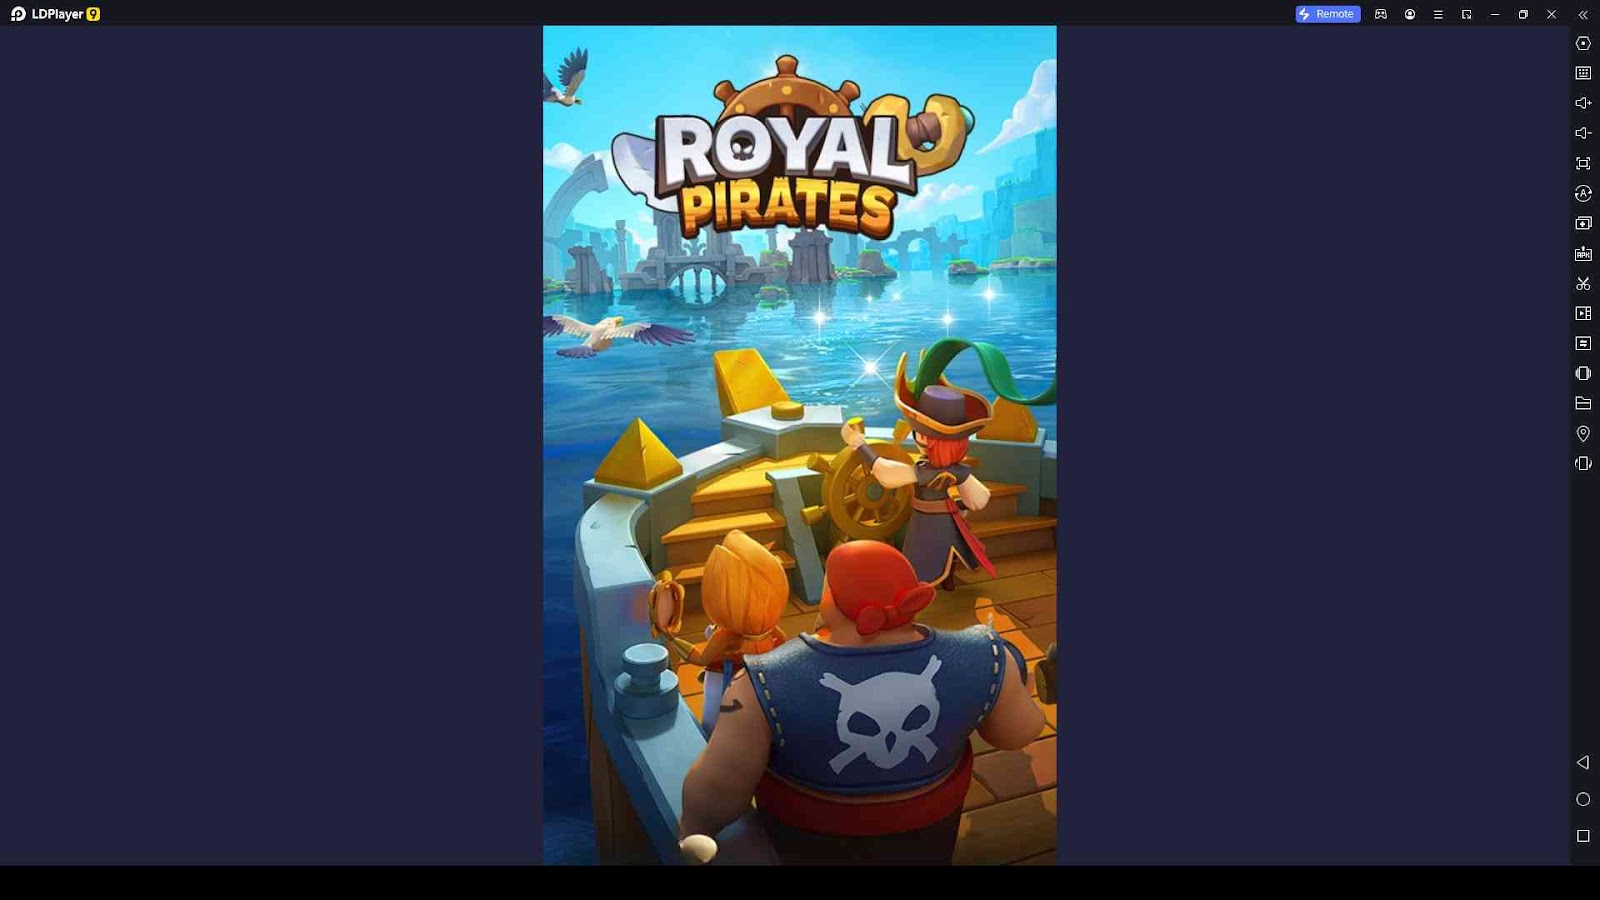 Royal Pirates - Idle Games Codes